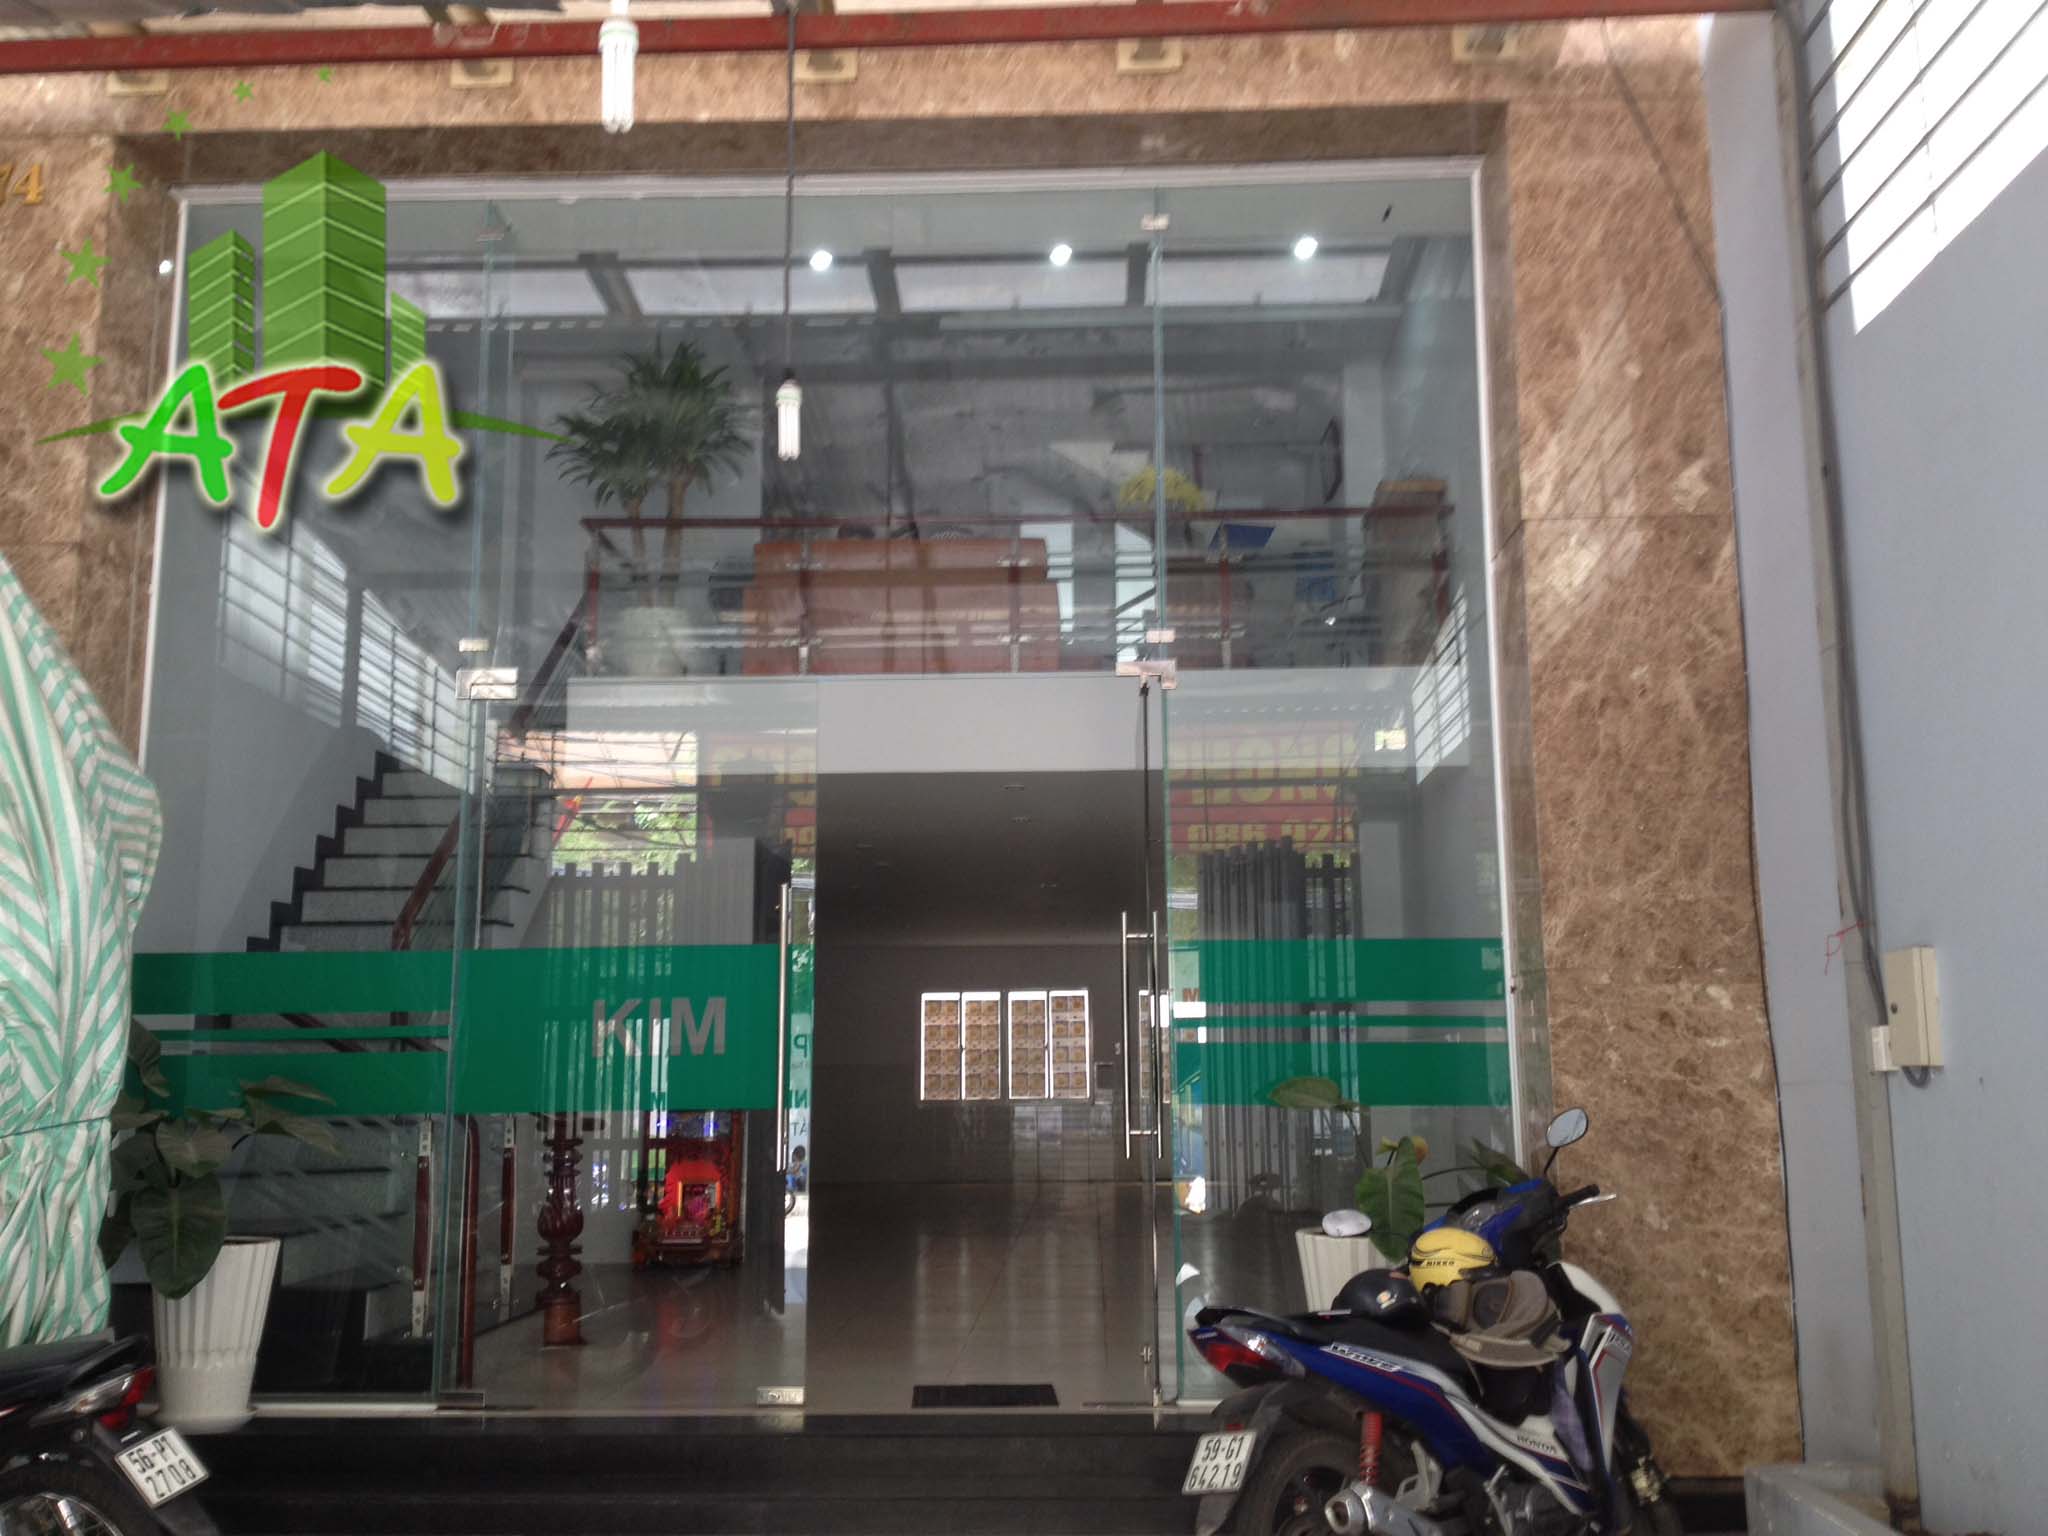 văn phòng cho thuê quận 4, ATA Nguyễn Khoái, Kim Nguyên, office for lease in hcmc, D4